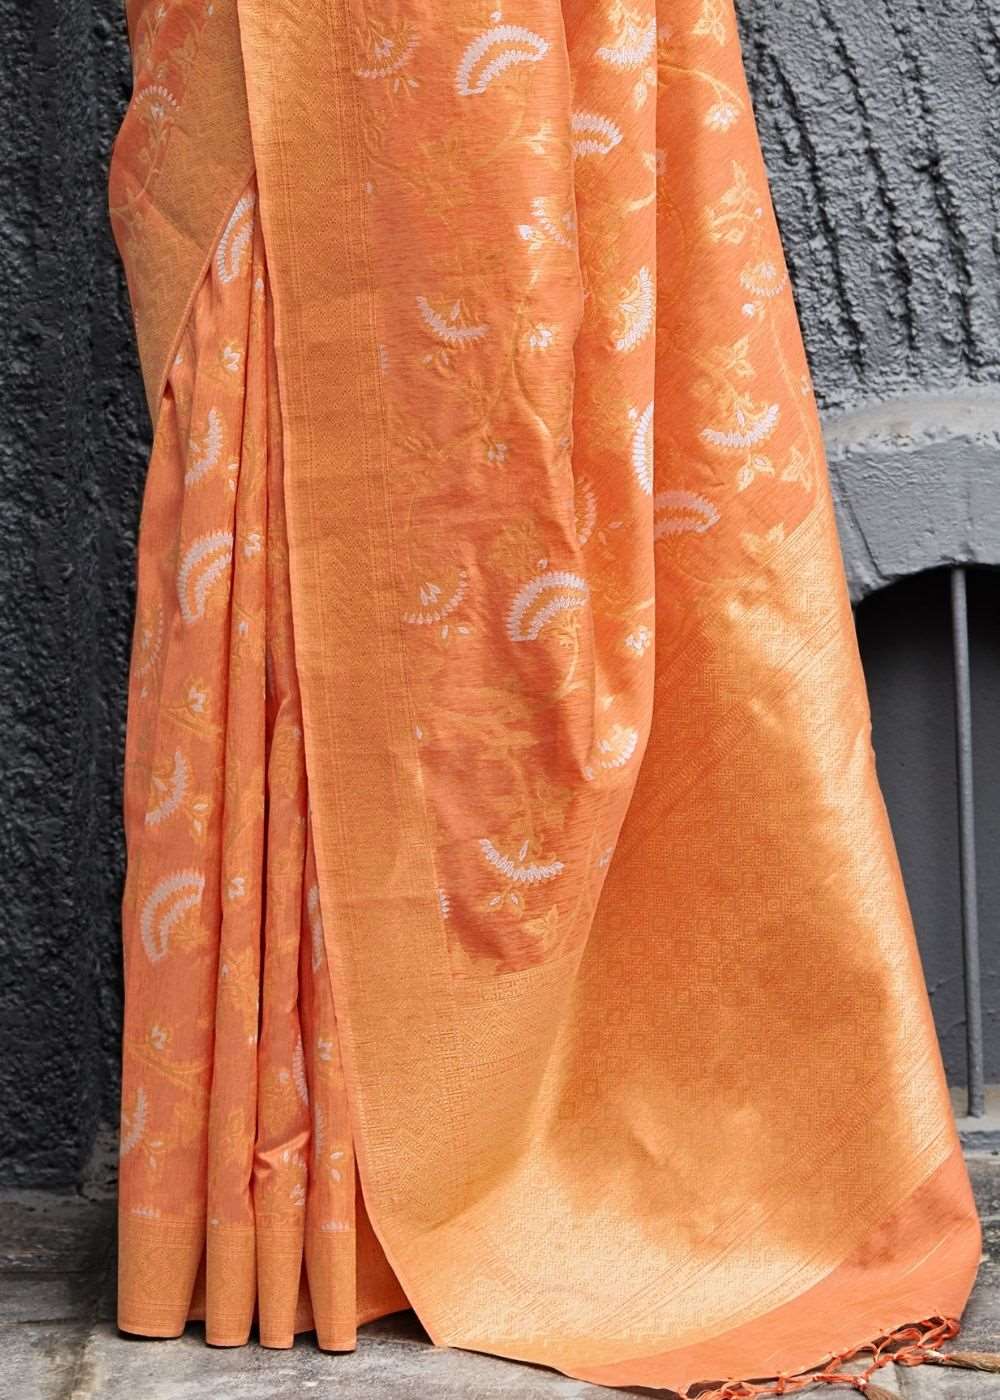 Apricot Orange Banarasi Silk Floral Motif Saree with Golden Border and Pallu - Colorful Saree